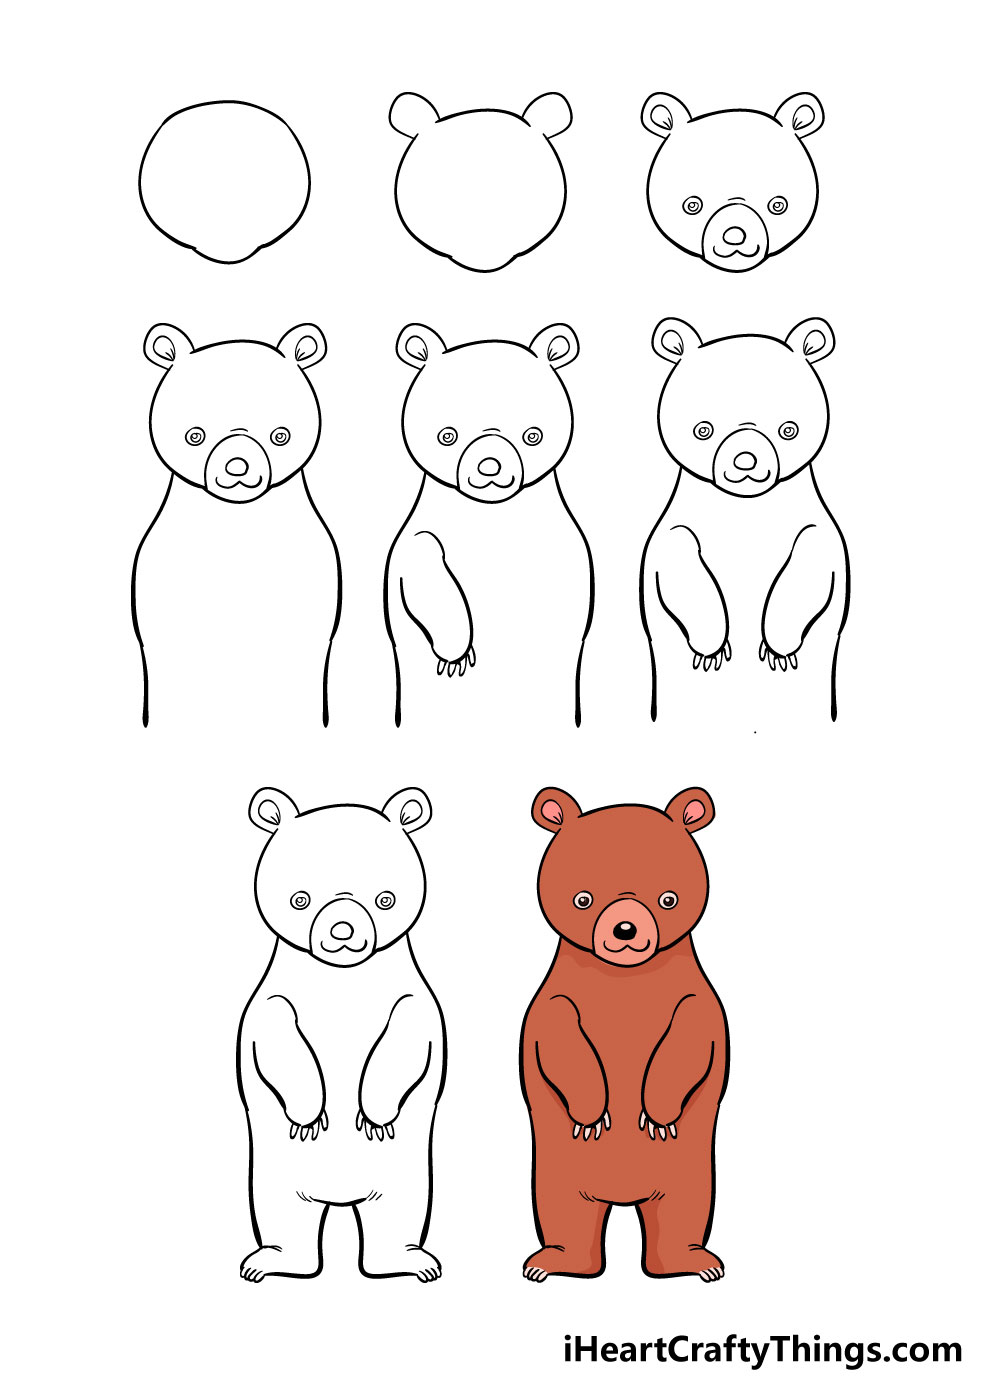 How to draw bear in 8 easy steps - Cách vẽ con gấu dễ thương đơn giản với 8 bước